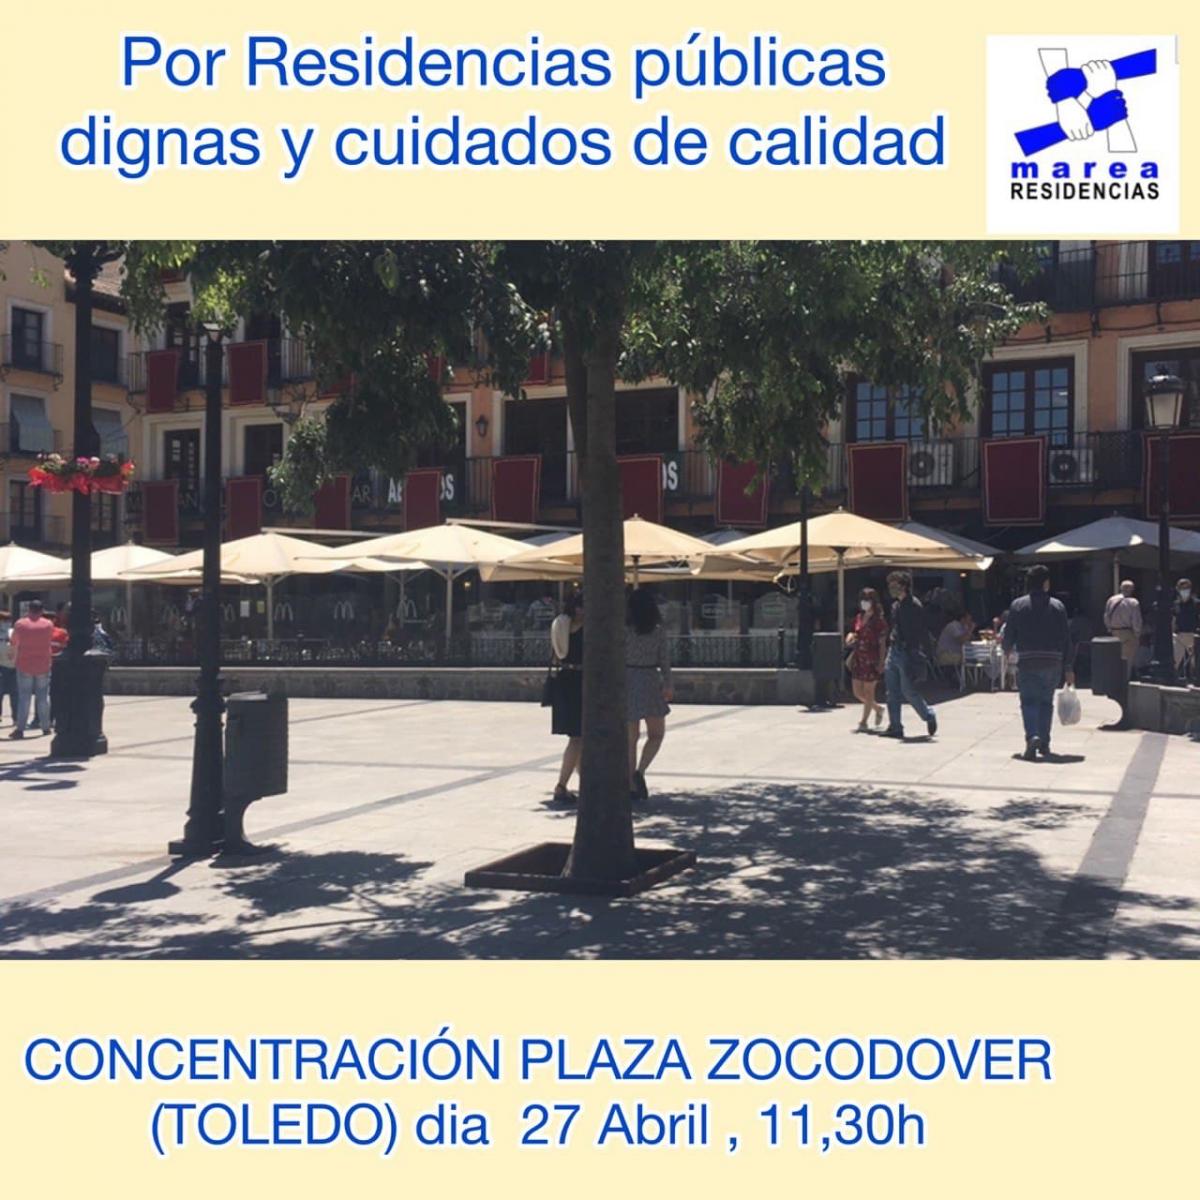 Concentración en Toledo 27 de Abril en Plaza Zocodover 11:30h 